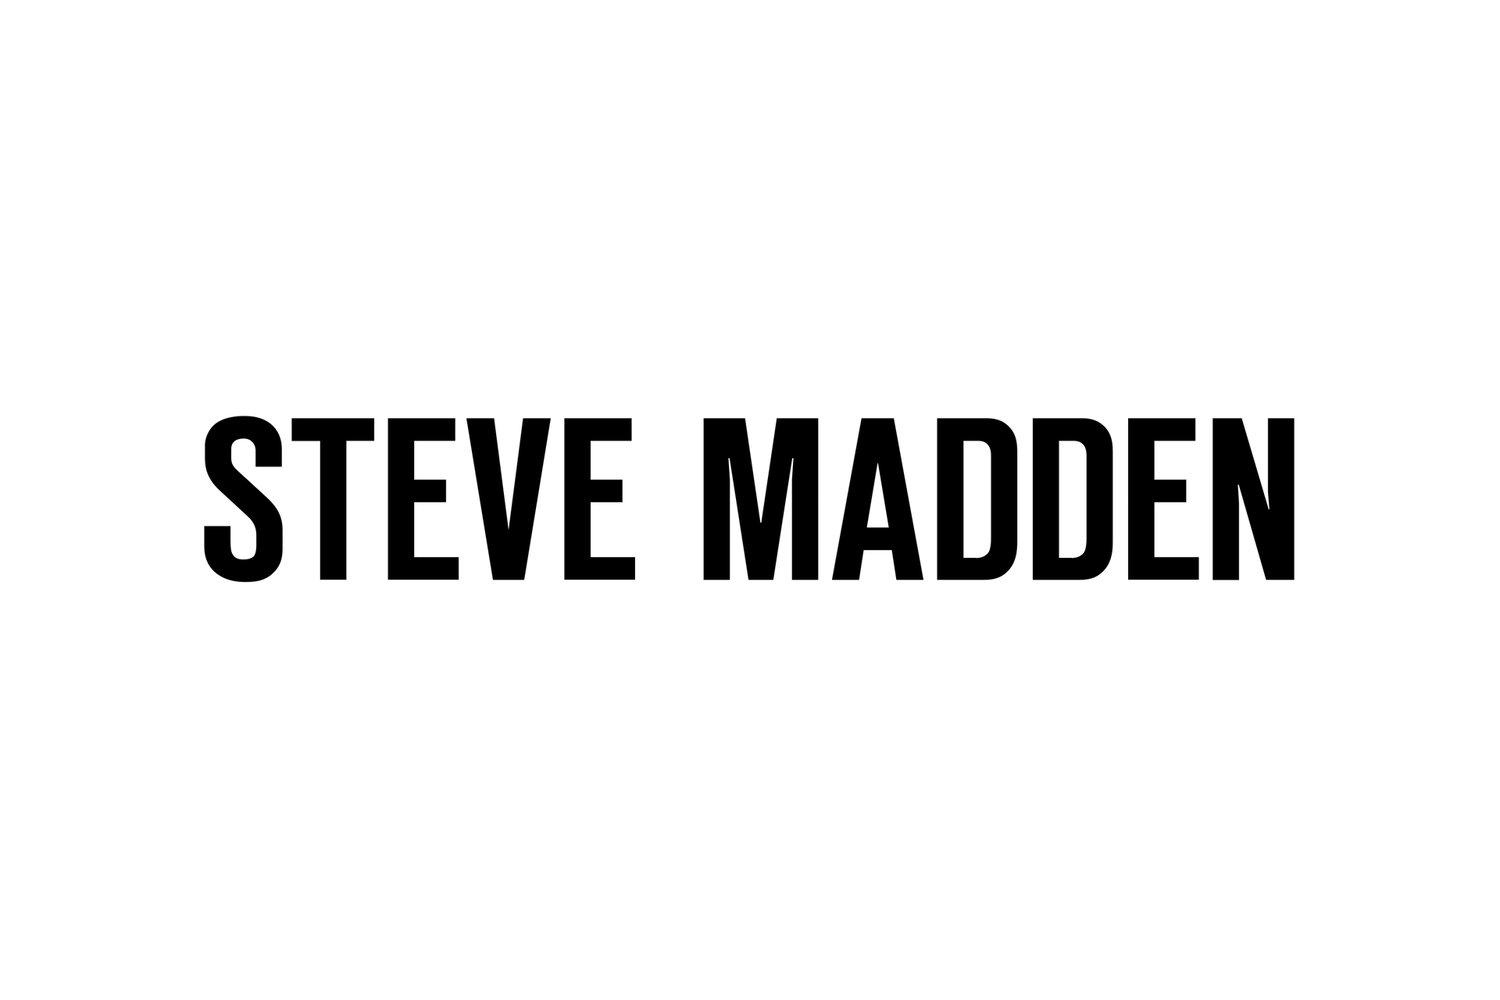 Jak znaleźć buty Steve Madden skórzane? - Jaktoznalezc.pl